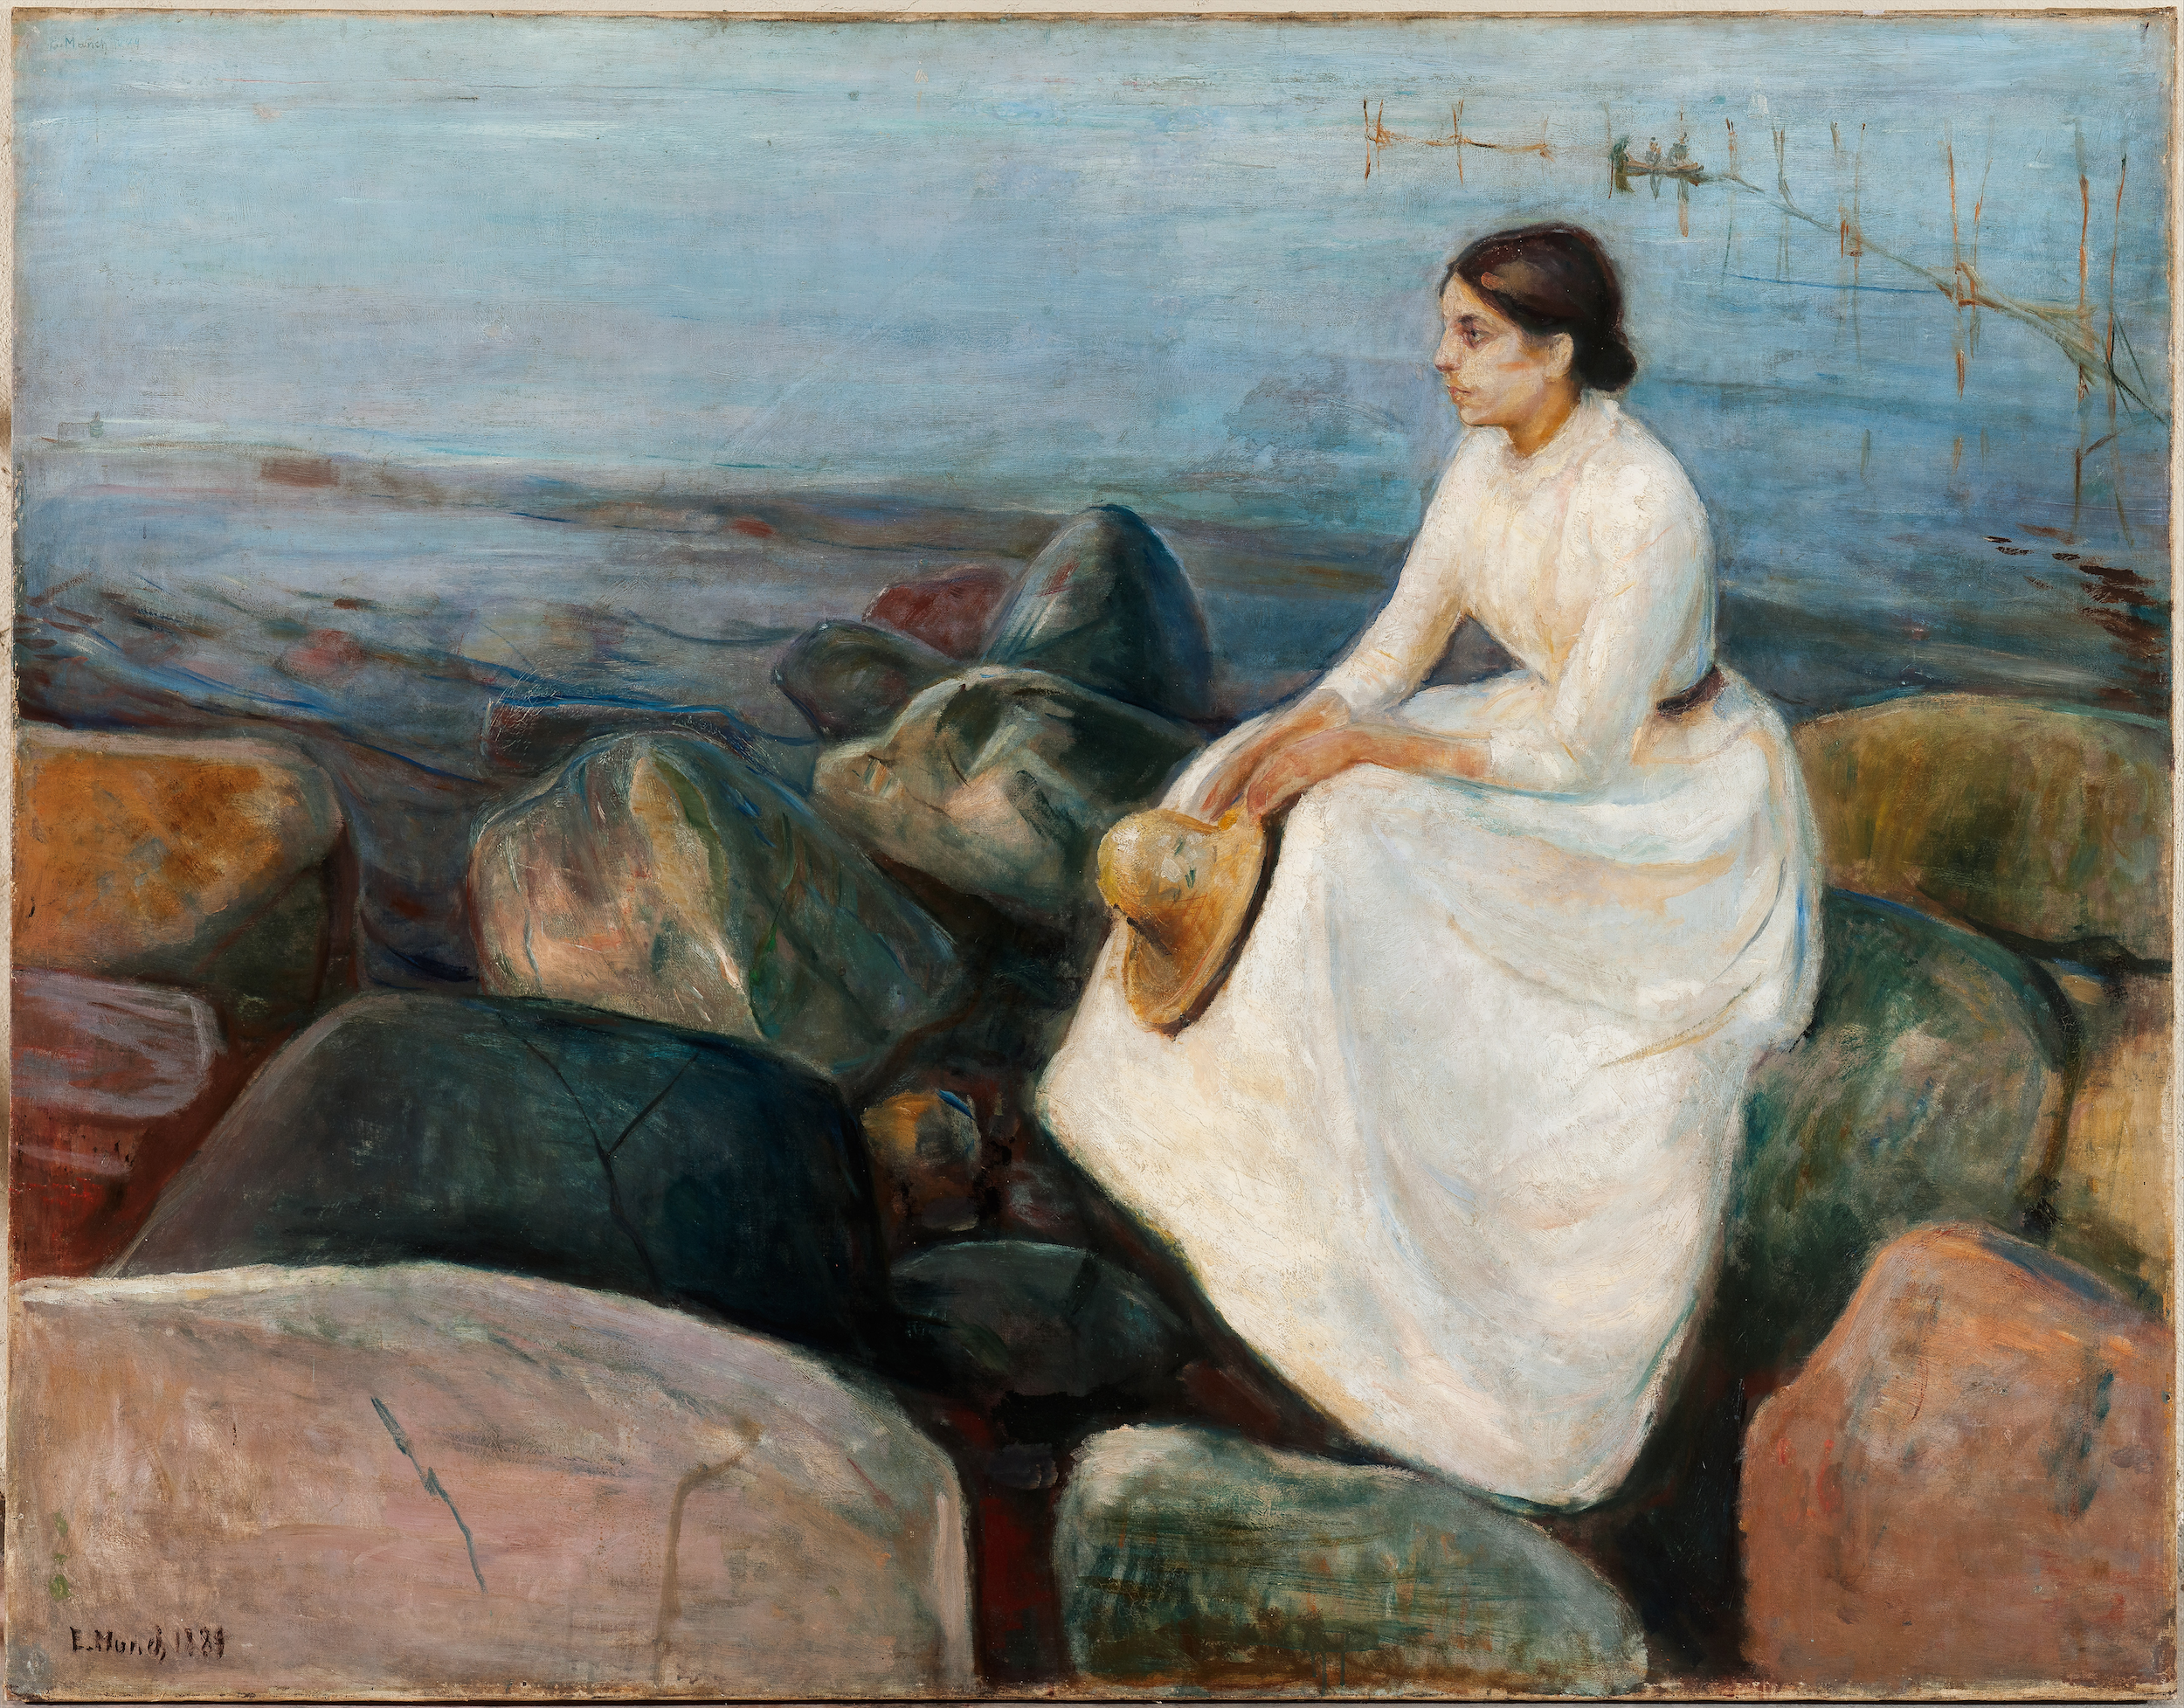 Noite de Verão, Inger na Praia by Edvard Munch - 1889 Europeana